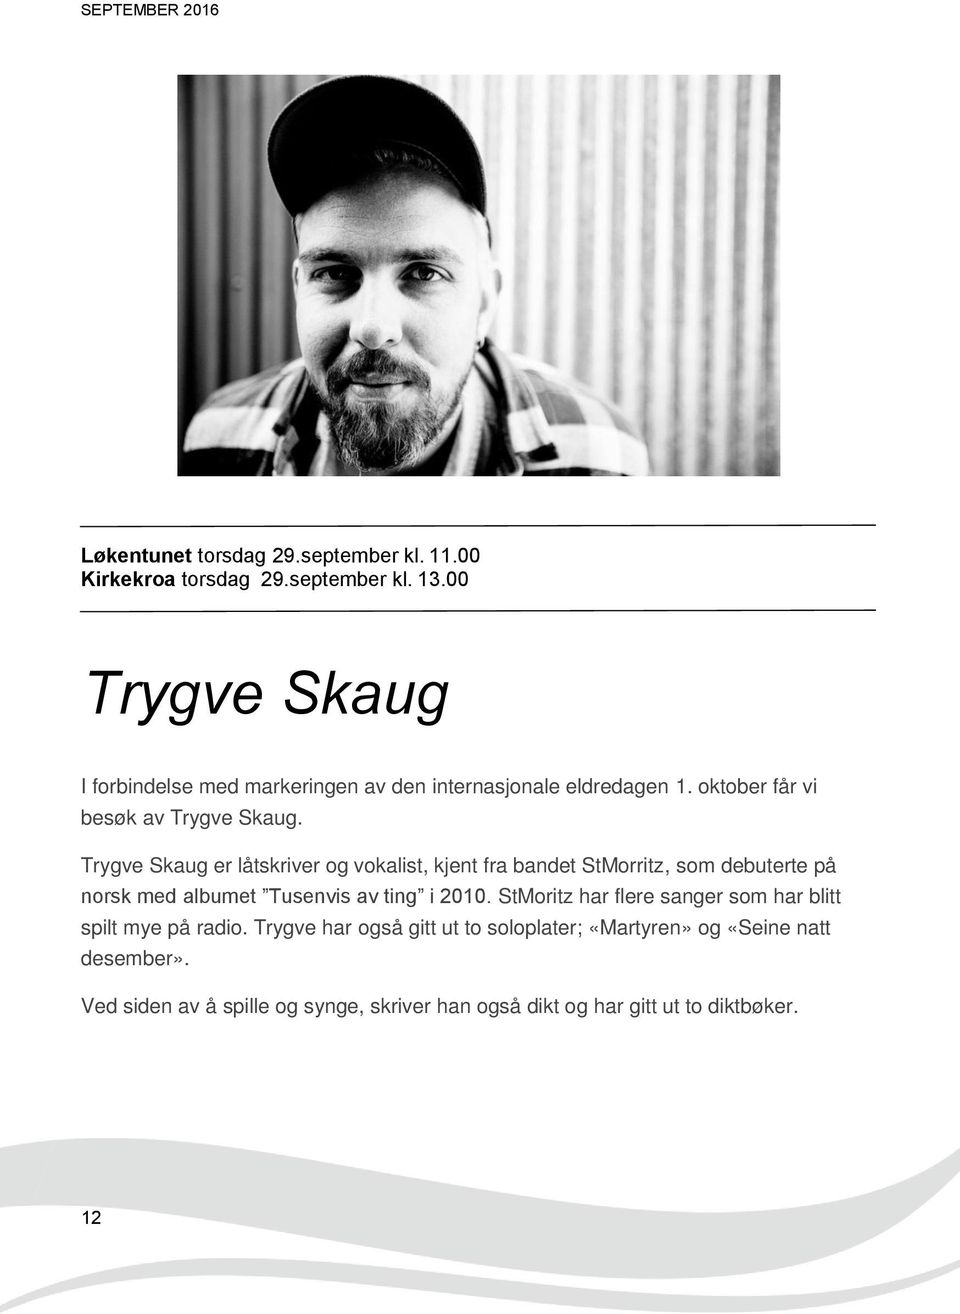 Trygve Skaug er låtskriver og vokalist, kjent fra bandet StMorritz, som debuterte på norsk med albumet Tusenvis av ting i 2010.